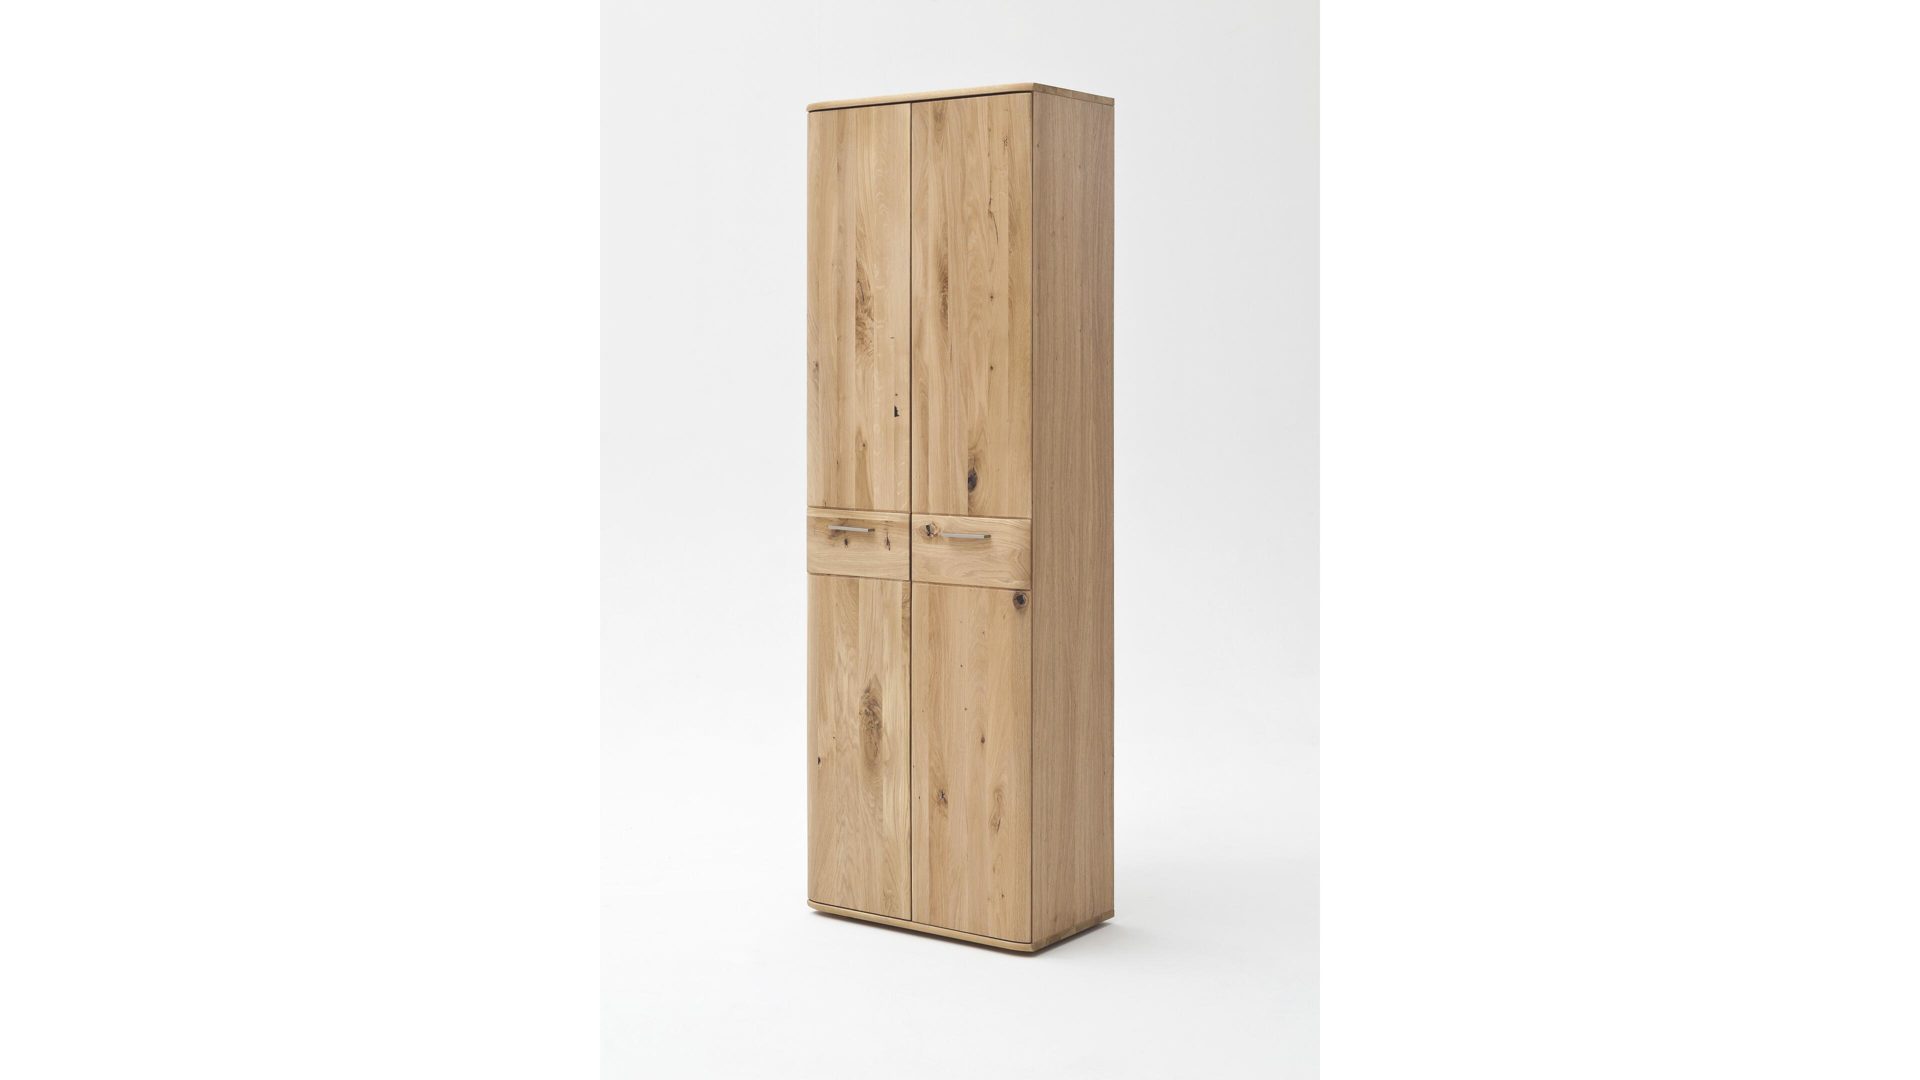 Garderobenschrank Mca furniture aus Holz in Holzfarben Garderobenschrank biancofarbene Balkeneiche – zwei Türen